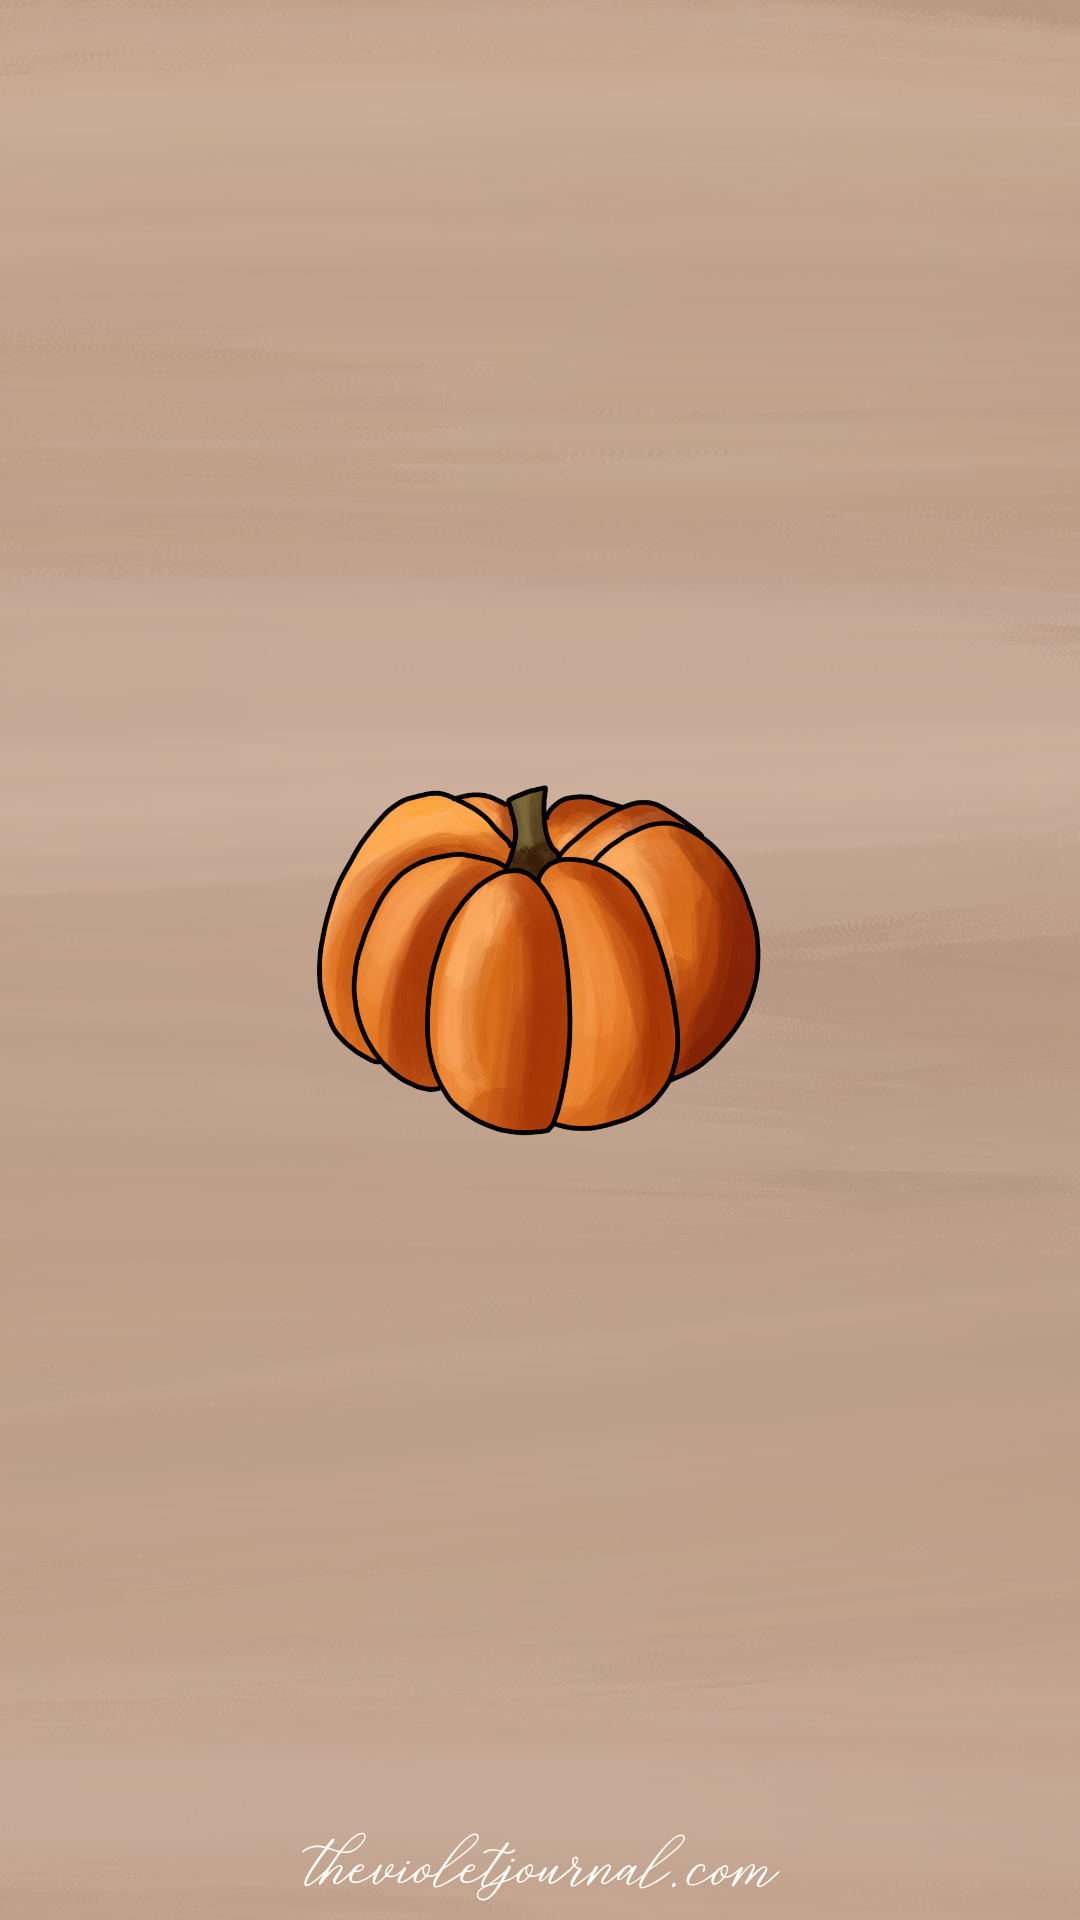  Halloween Hintergrundbild 1080x1920. Aesthetic Wallpaper for Halloween. Herbst hintergrund, Herbst hintergrundbild, Halloween hintergrund